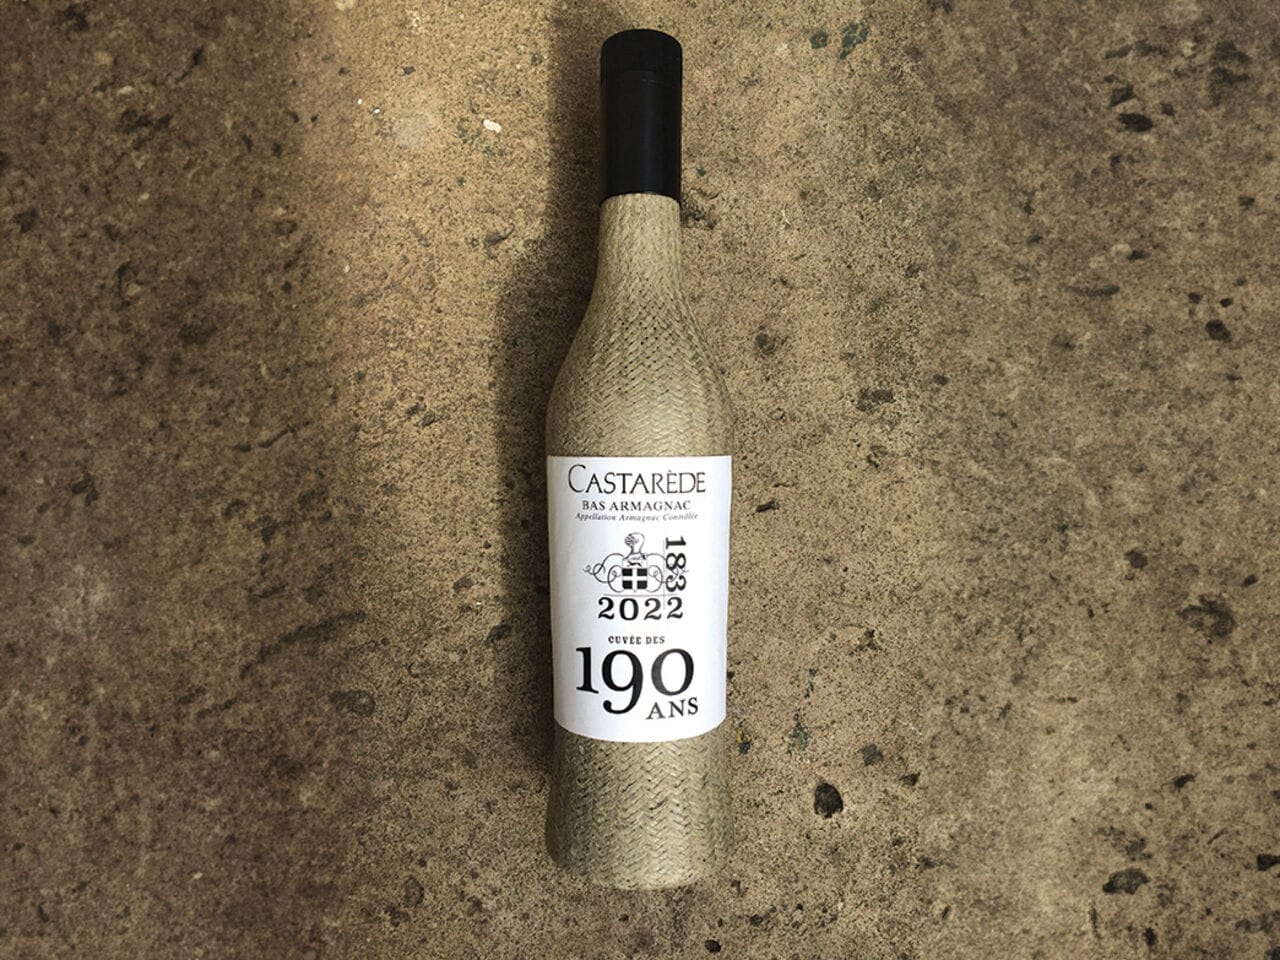 Armagnac Castarède dévoile la première vendange 2020 du Cépage Baco dans une bouteille en lin inédite